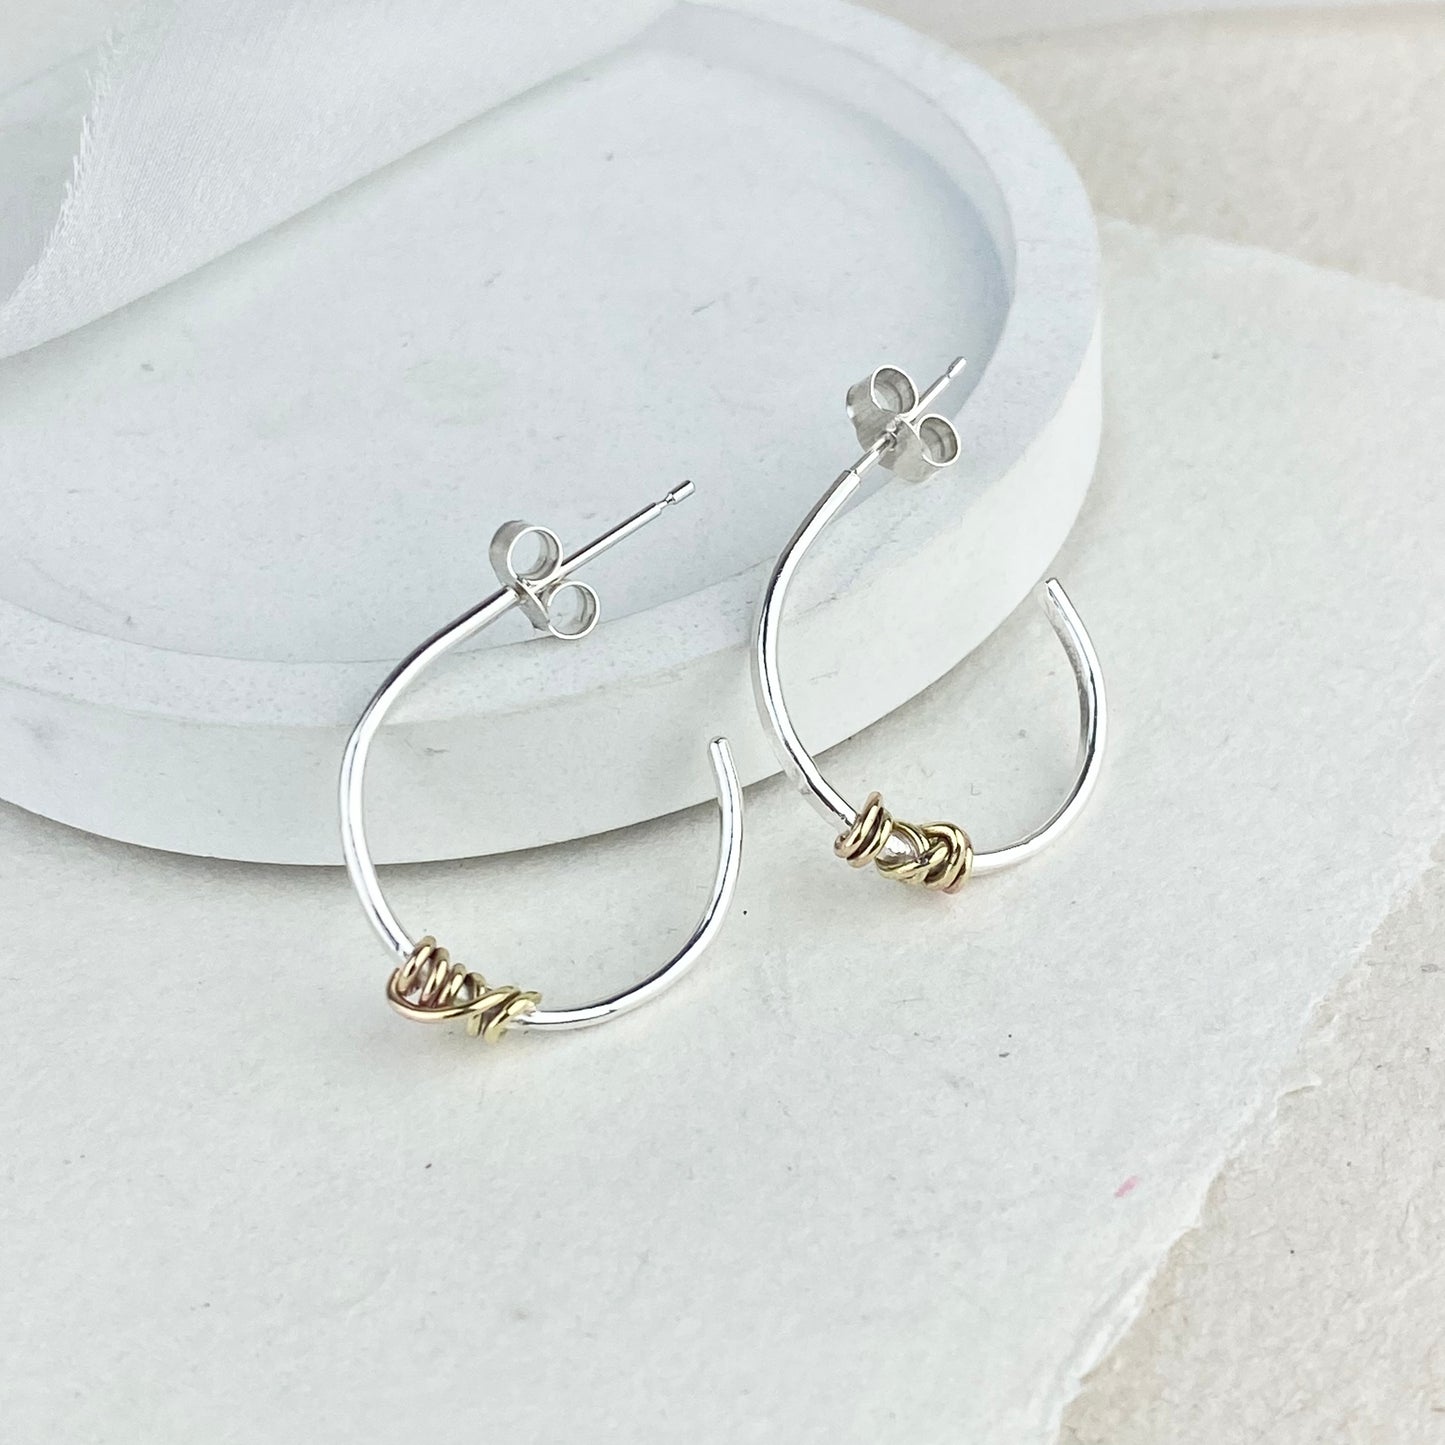 The Tanner Hoop Earrings - sterling silver hoop earrings with 12ct gold twist - mixed metal earrings